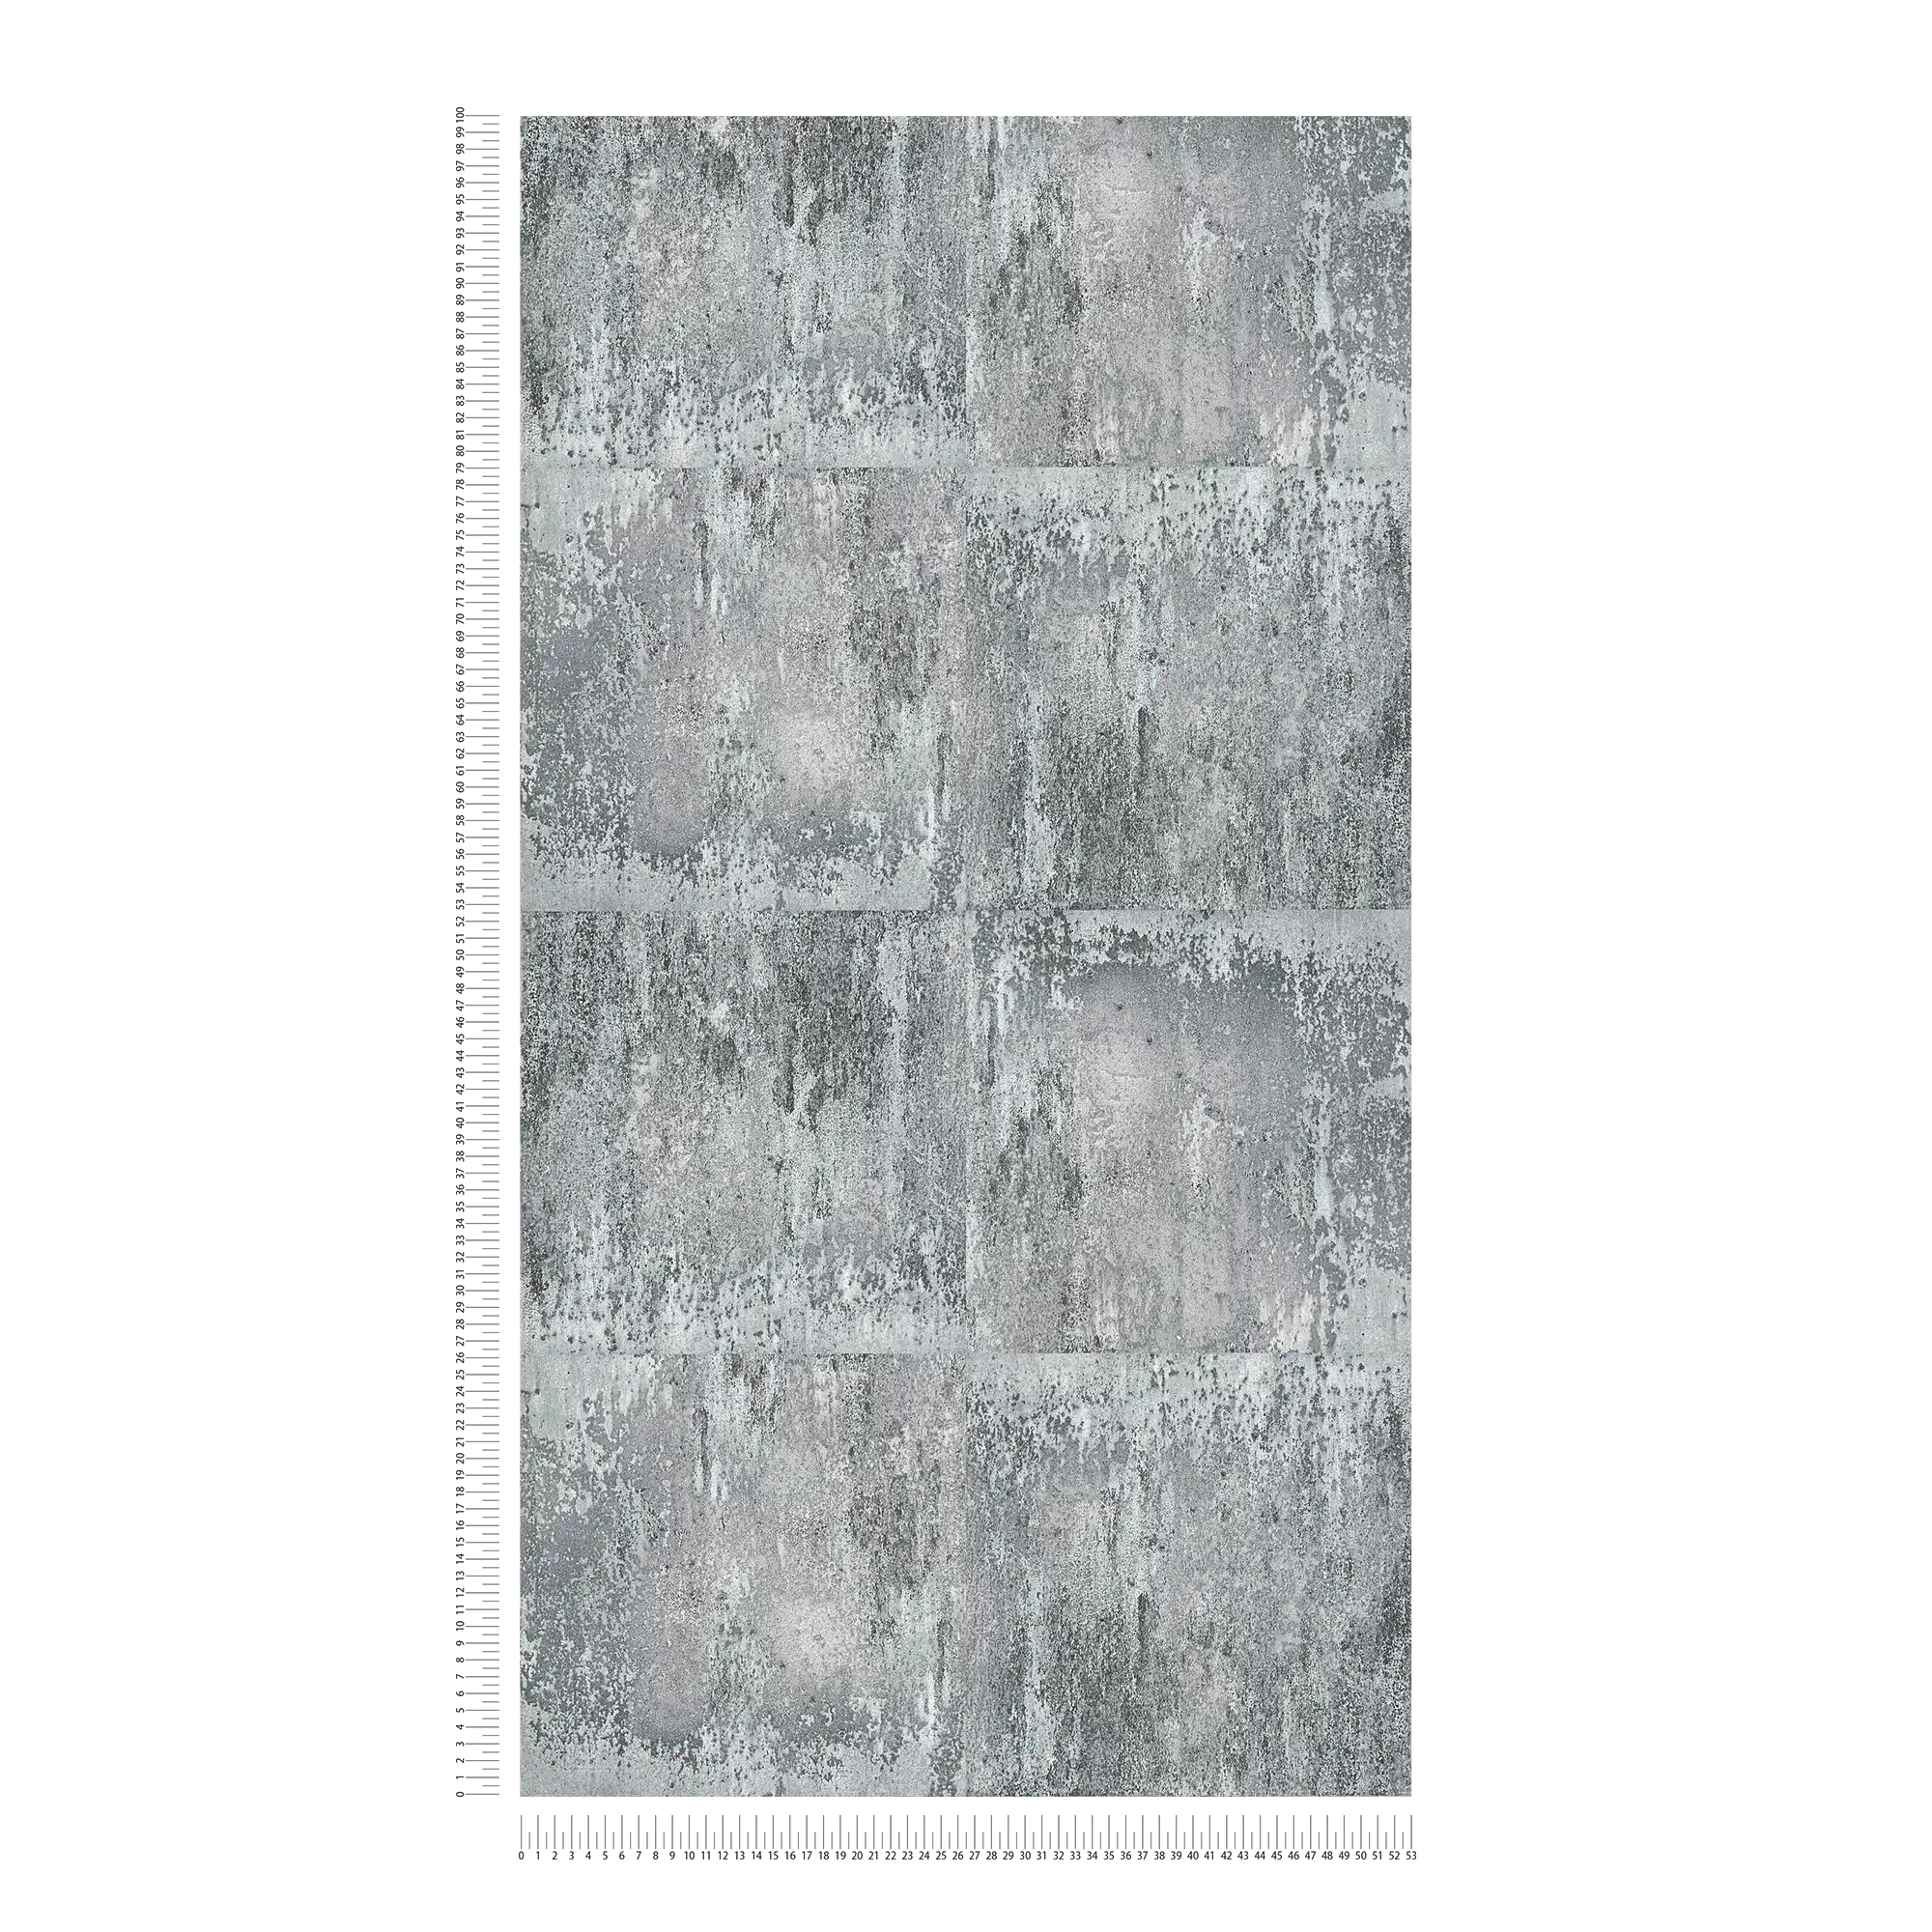             Behang met rustieke metaallook & ruw patroon - grijs, zwart, zilver
        